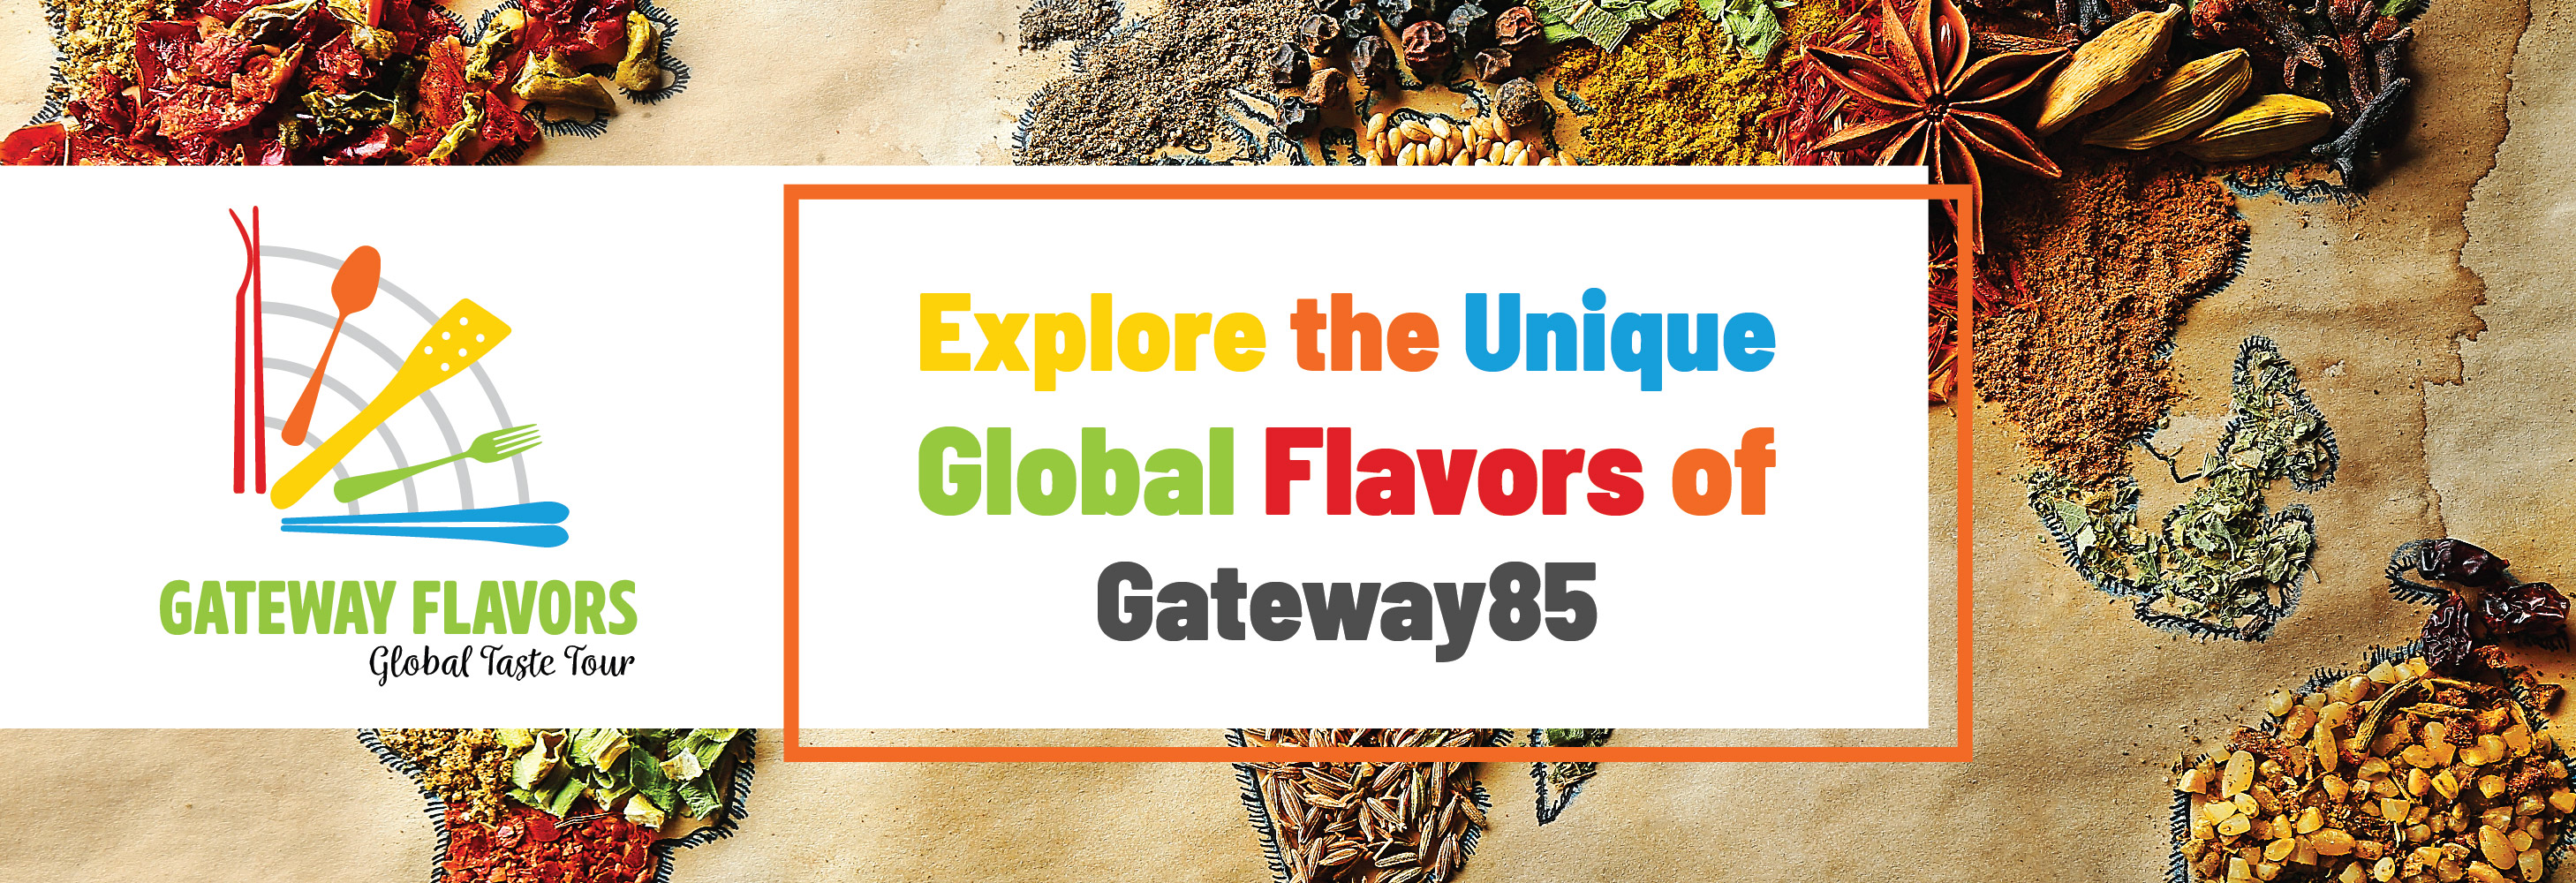 Global Taste Tour Web Banner